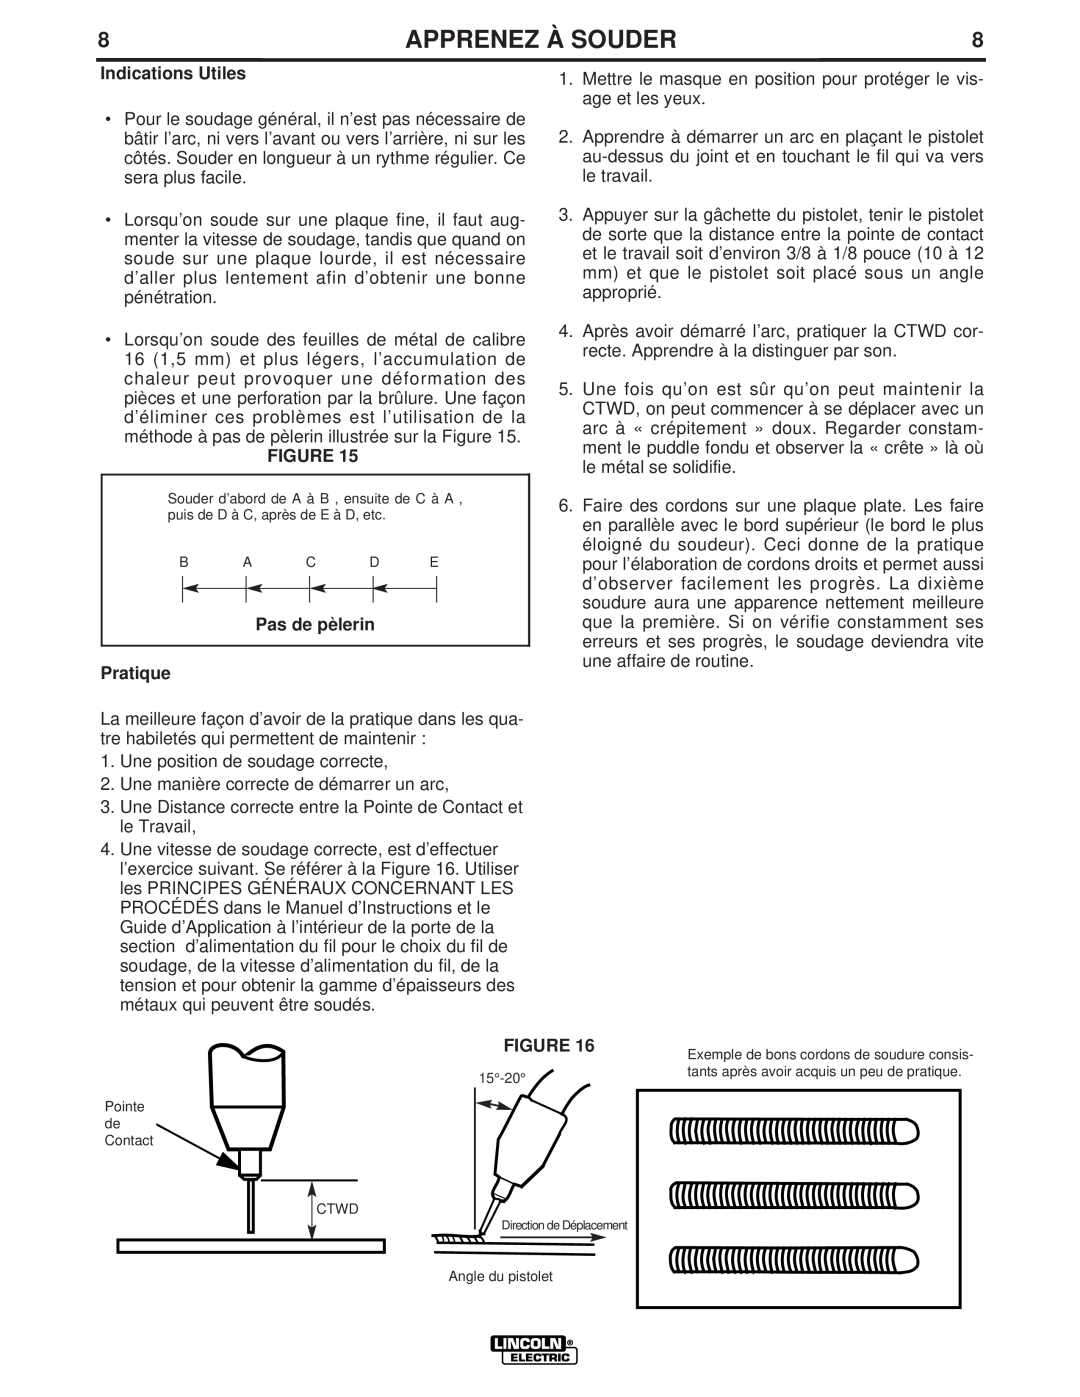 Lincoln Electric LTW1 manual 8APPRENEZ À SOUDER8, Indications Utiles, Pratique 